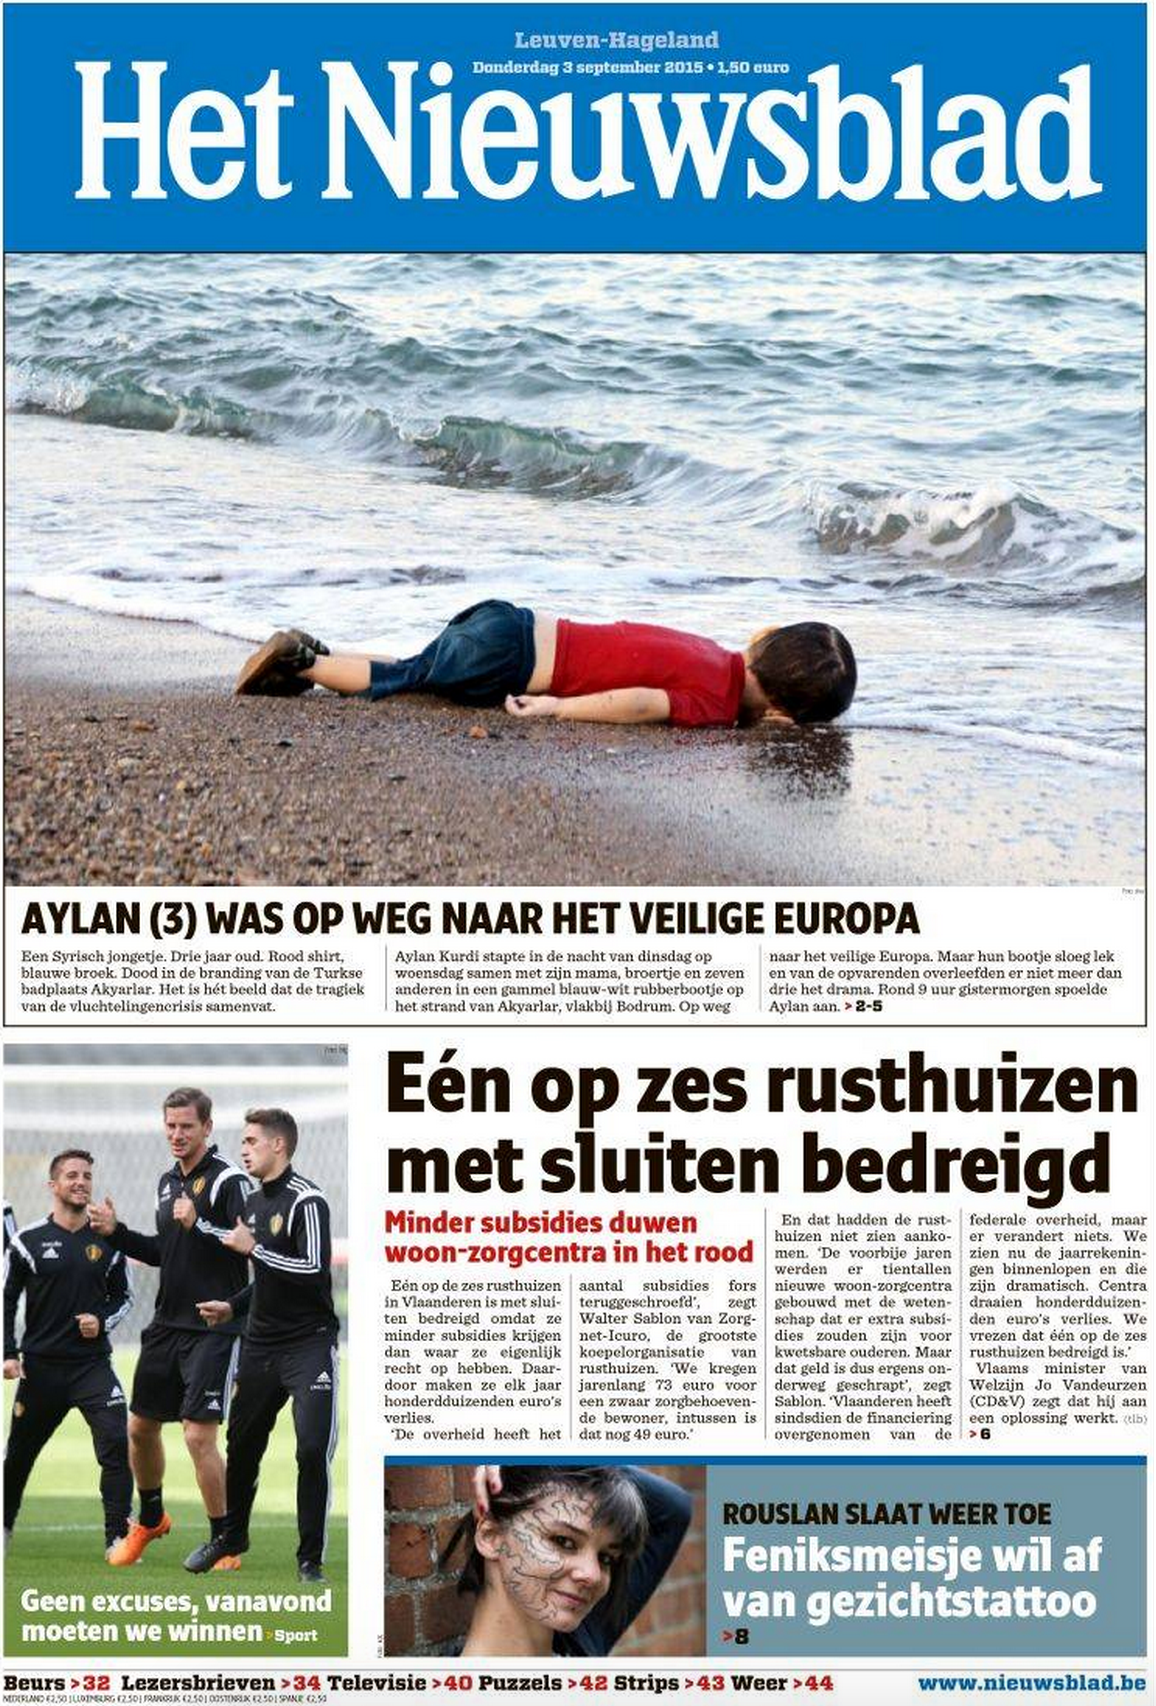 Drowned Migrant Boy Het Nieuwsblad front page